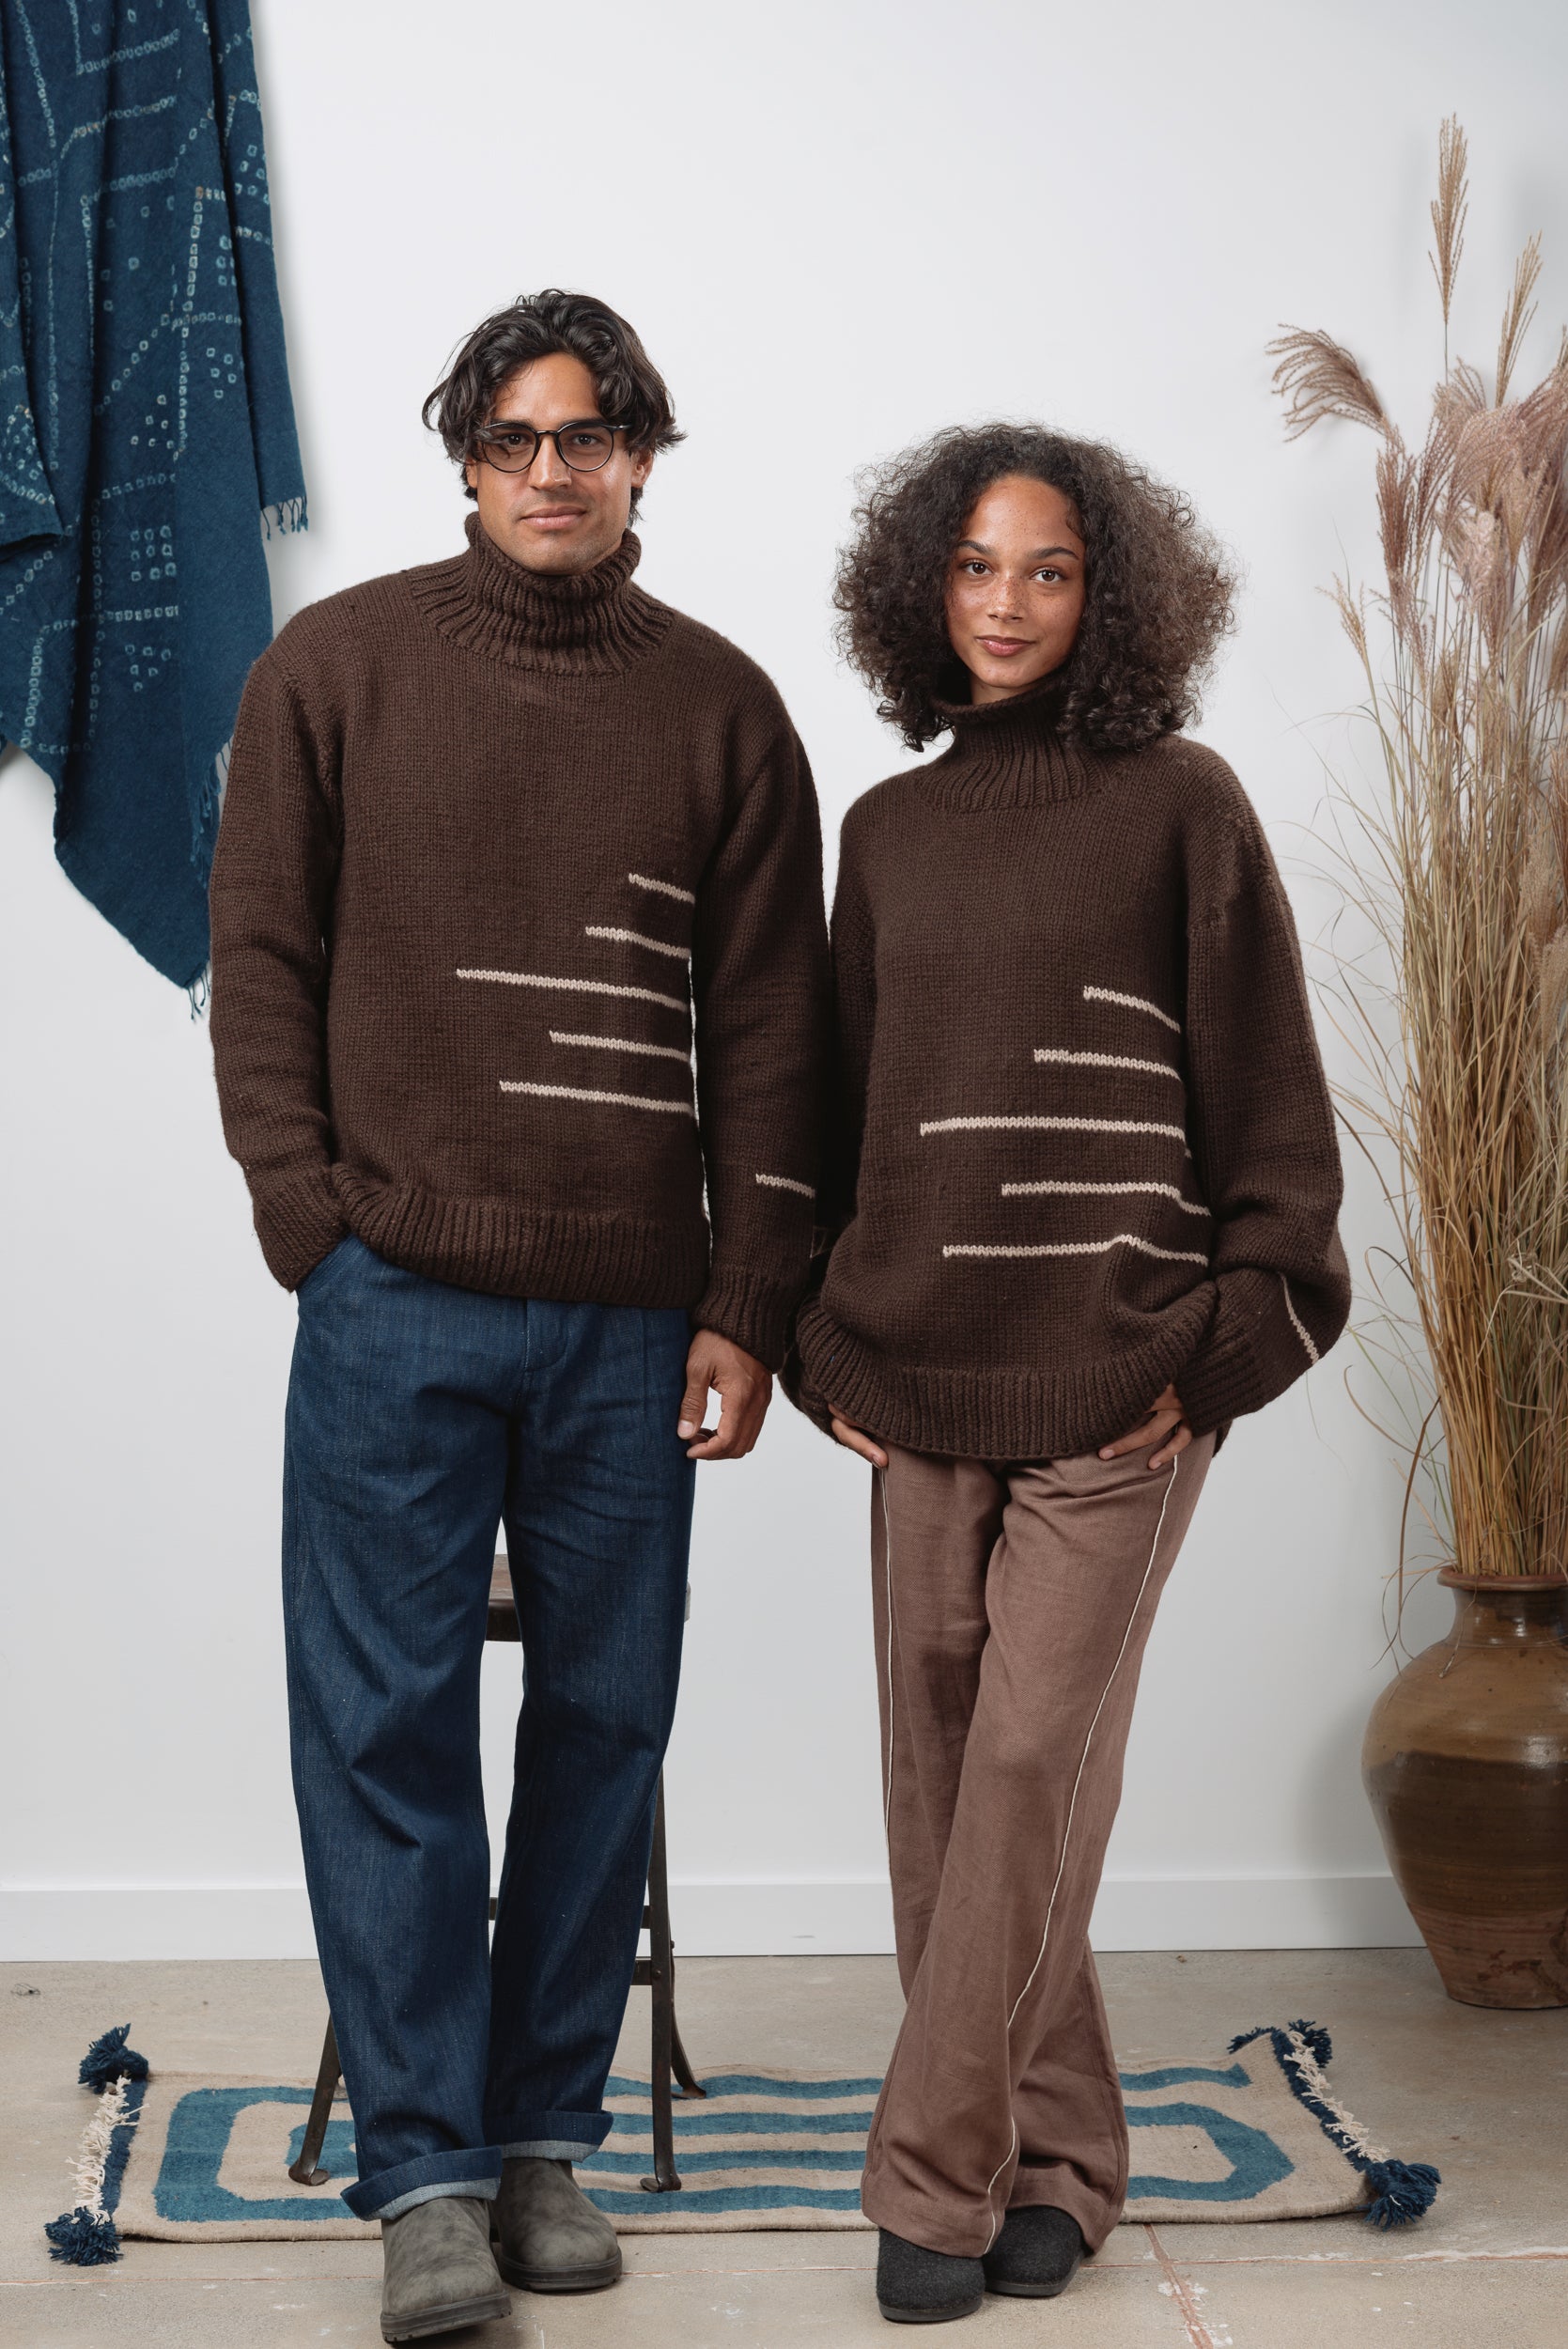 Rahi Sweater in Chocolate Yak/Lambswool